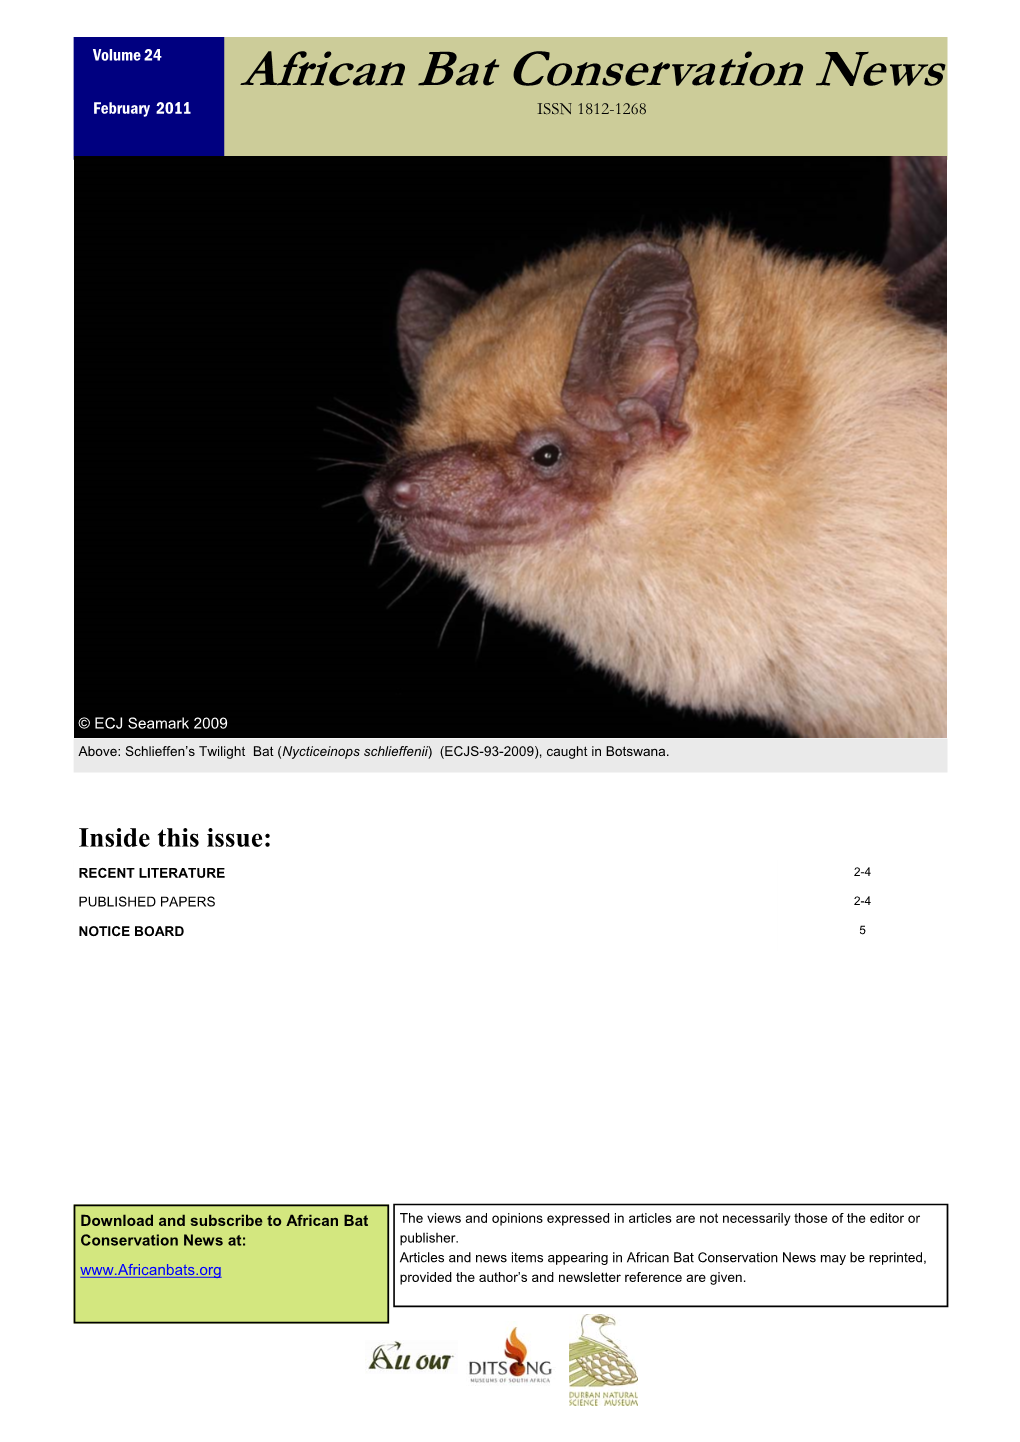 African Bat Conservation News Vol 20